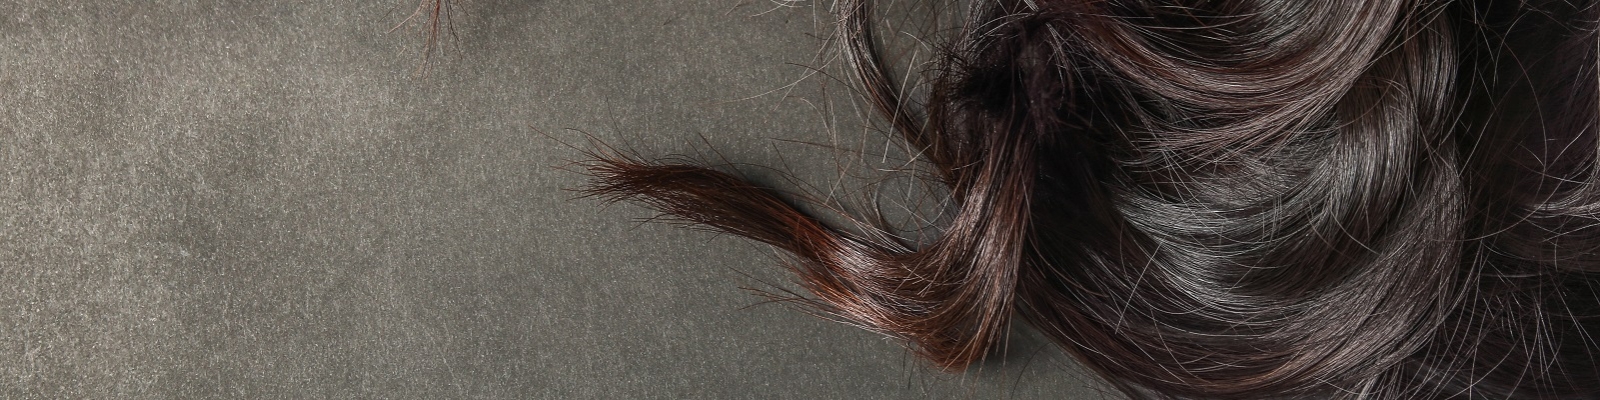 К чему снятся длинные волосы: толкование снов про длинные волосы